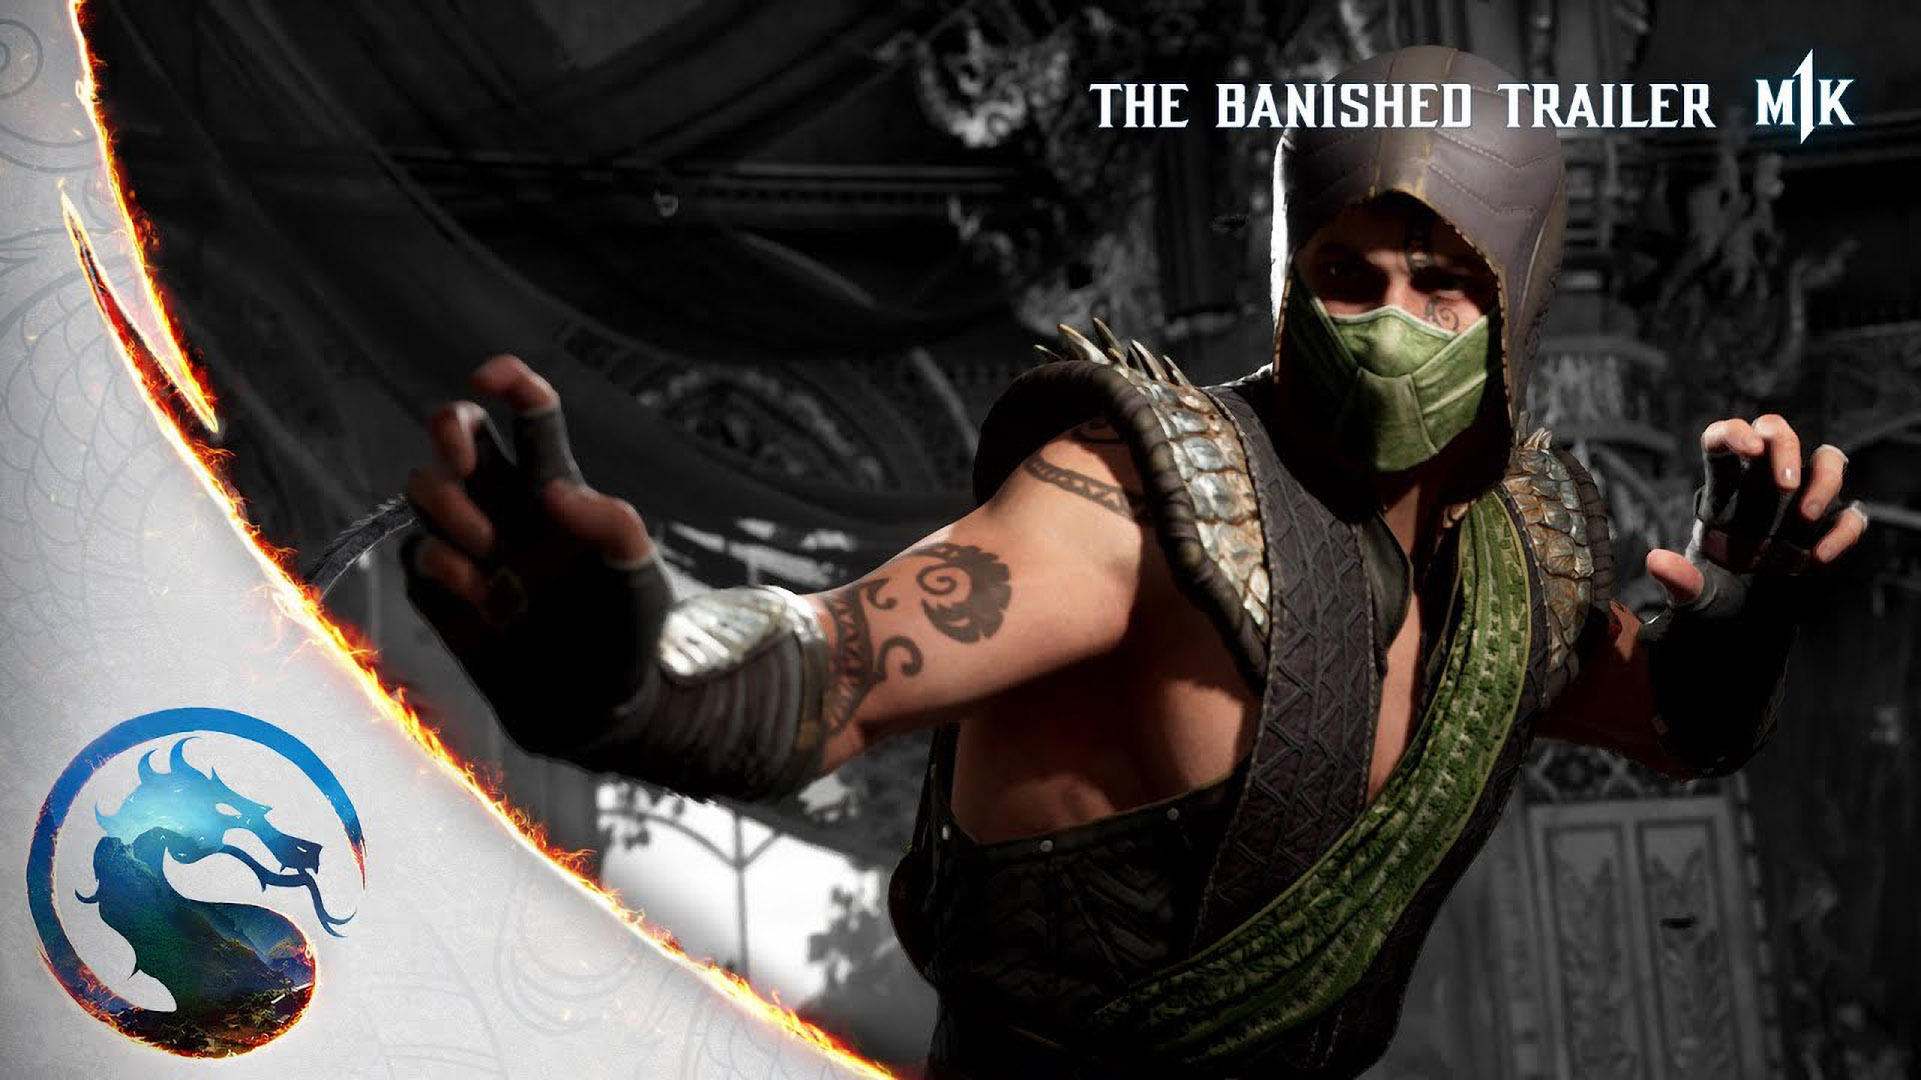 Mortal Kombat vs. DC Universe - Xbox 360 – Retro Raven Games